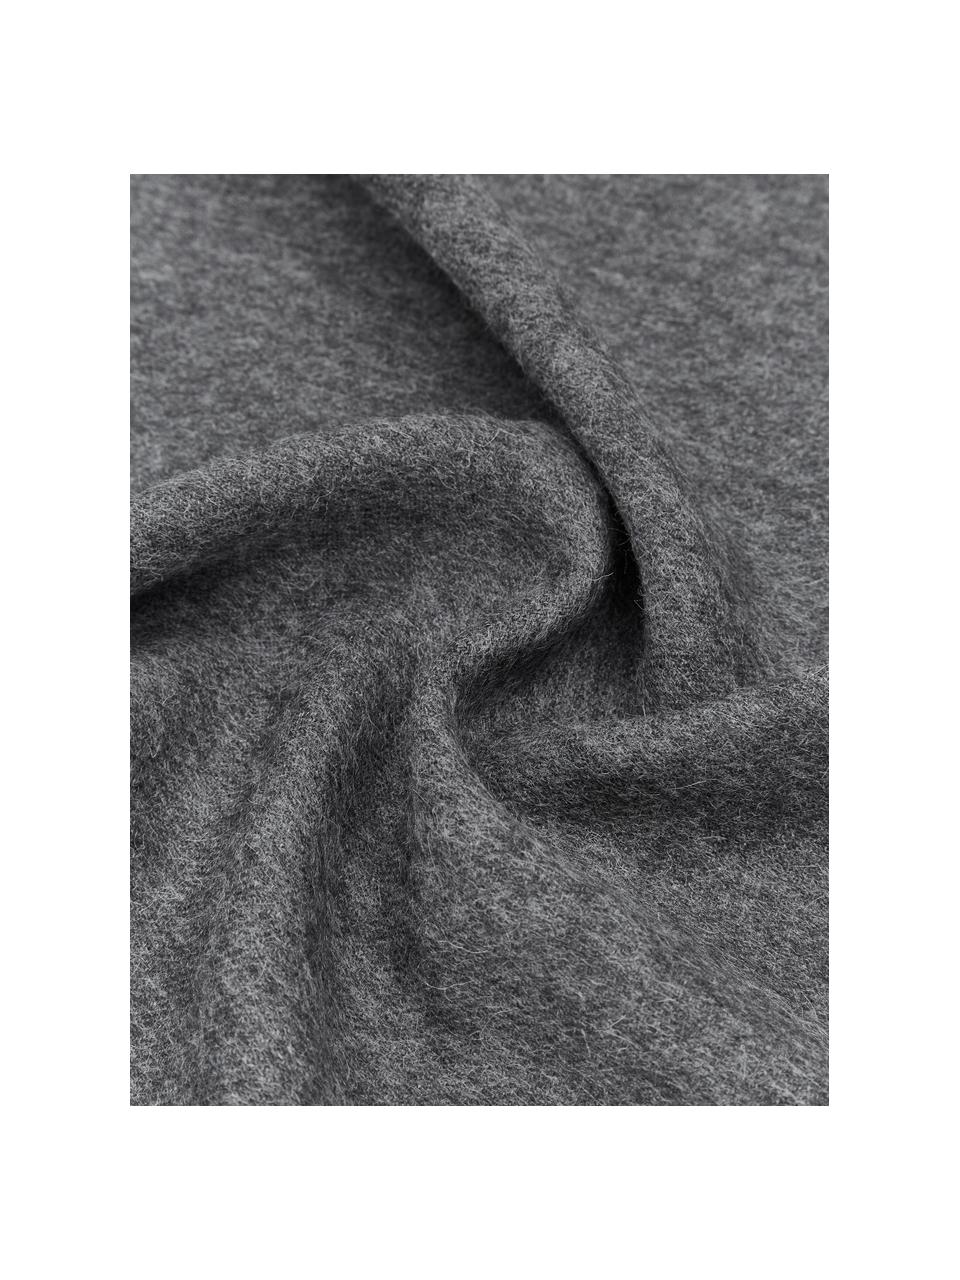 Plaid in lana di baby alpaca Luxury, 100% lana di baby alpaca

Questa coperta è realizzata in lana di baby alpaca super morbida e di alta qualità. Piacevole e calda per la pelle, è resistente ma allo stesso tempo leggera e ha eccellenti proprietà di termoregolazione. Ciò rende questa coperta perfetta per le fresche serate estive e le fredde giornate invernali., Grigio scuro, Larg. 130 x Lung. 200 cm